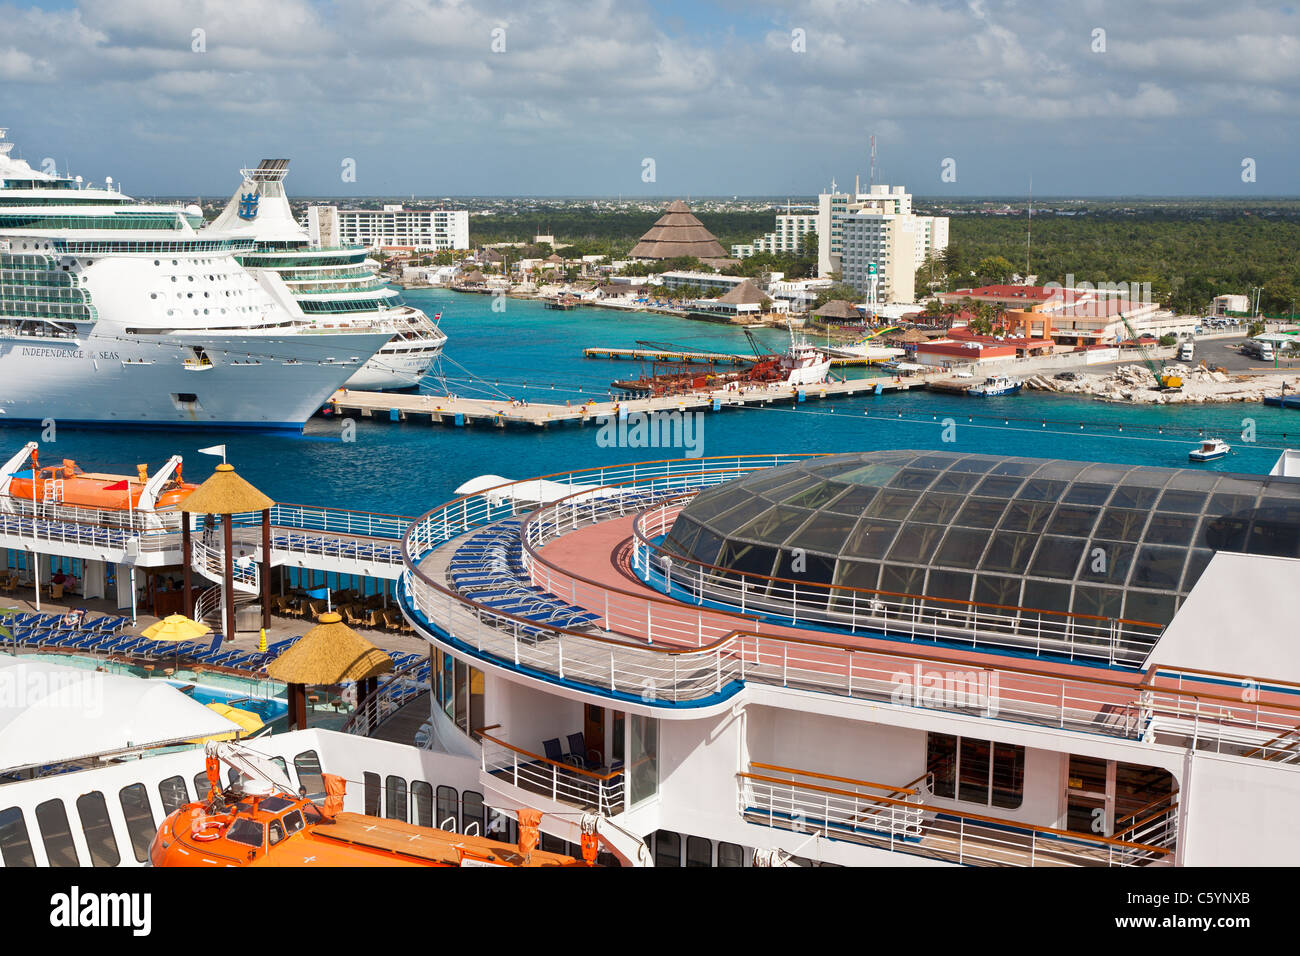 Carnaval de éxtasis y dos buques de cruceros Royal Caribbean en el puerto en Cozumel, México, en el Mar Caribe Foto de stock